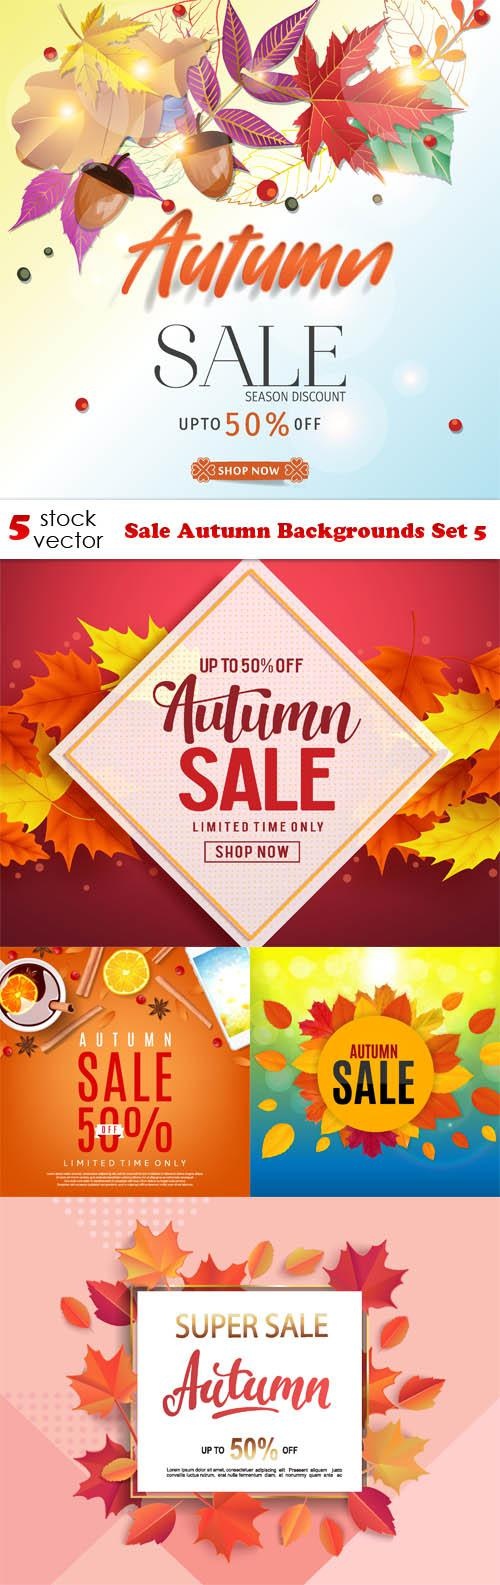 Sale Autumn Backgrounds Set 5 ((ai ((tff (11 files)